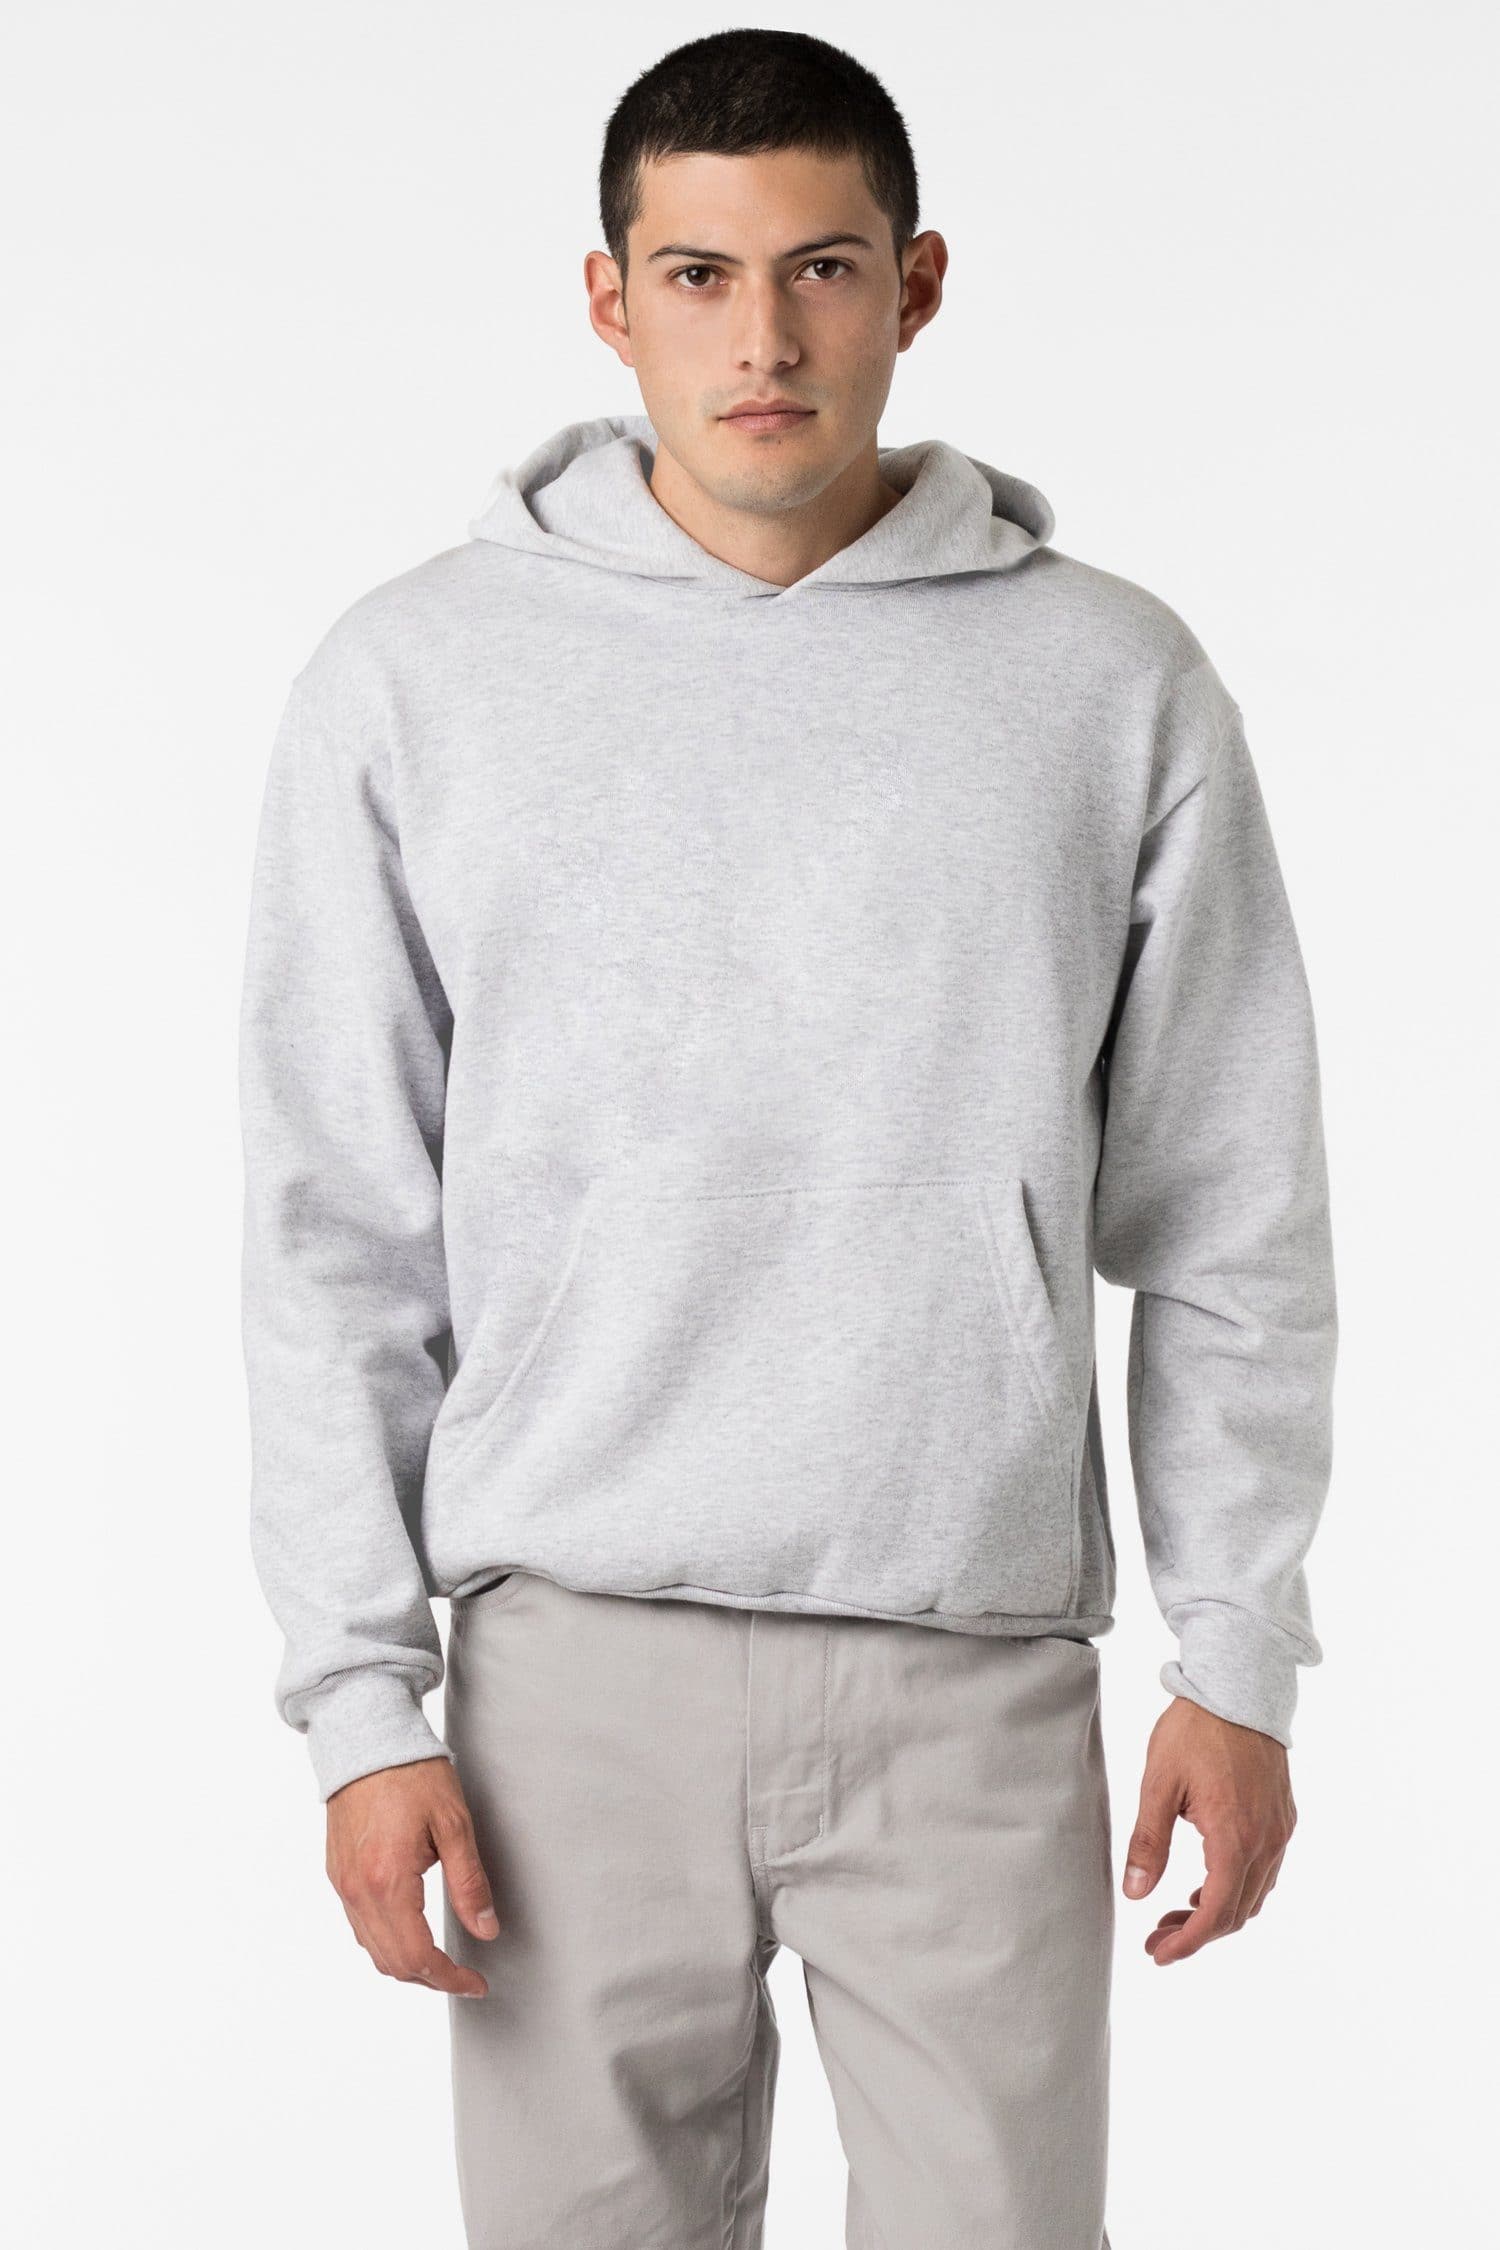 HF-09 - 14oz. Heavy Fleece Hooded Pullover Sweatshirt – Los